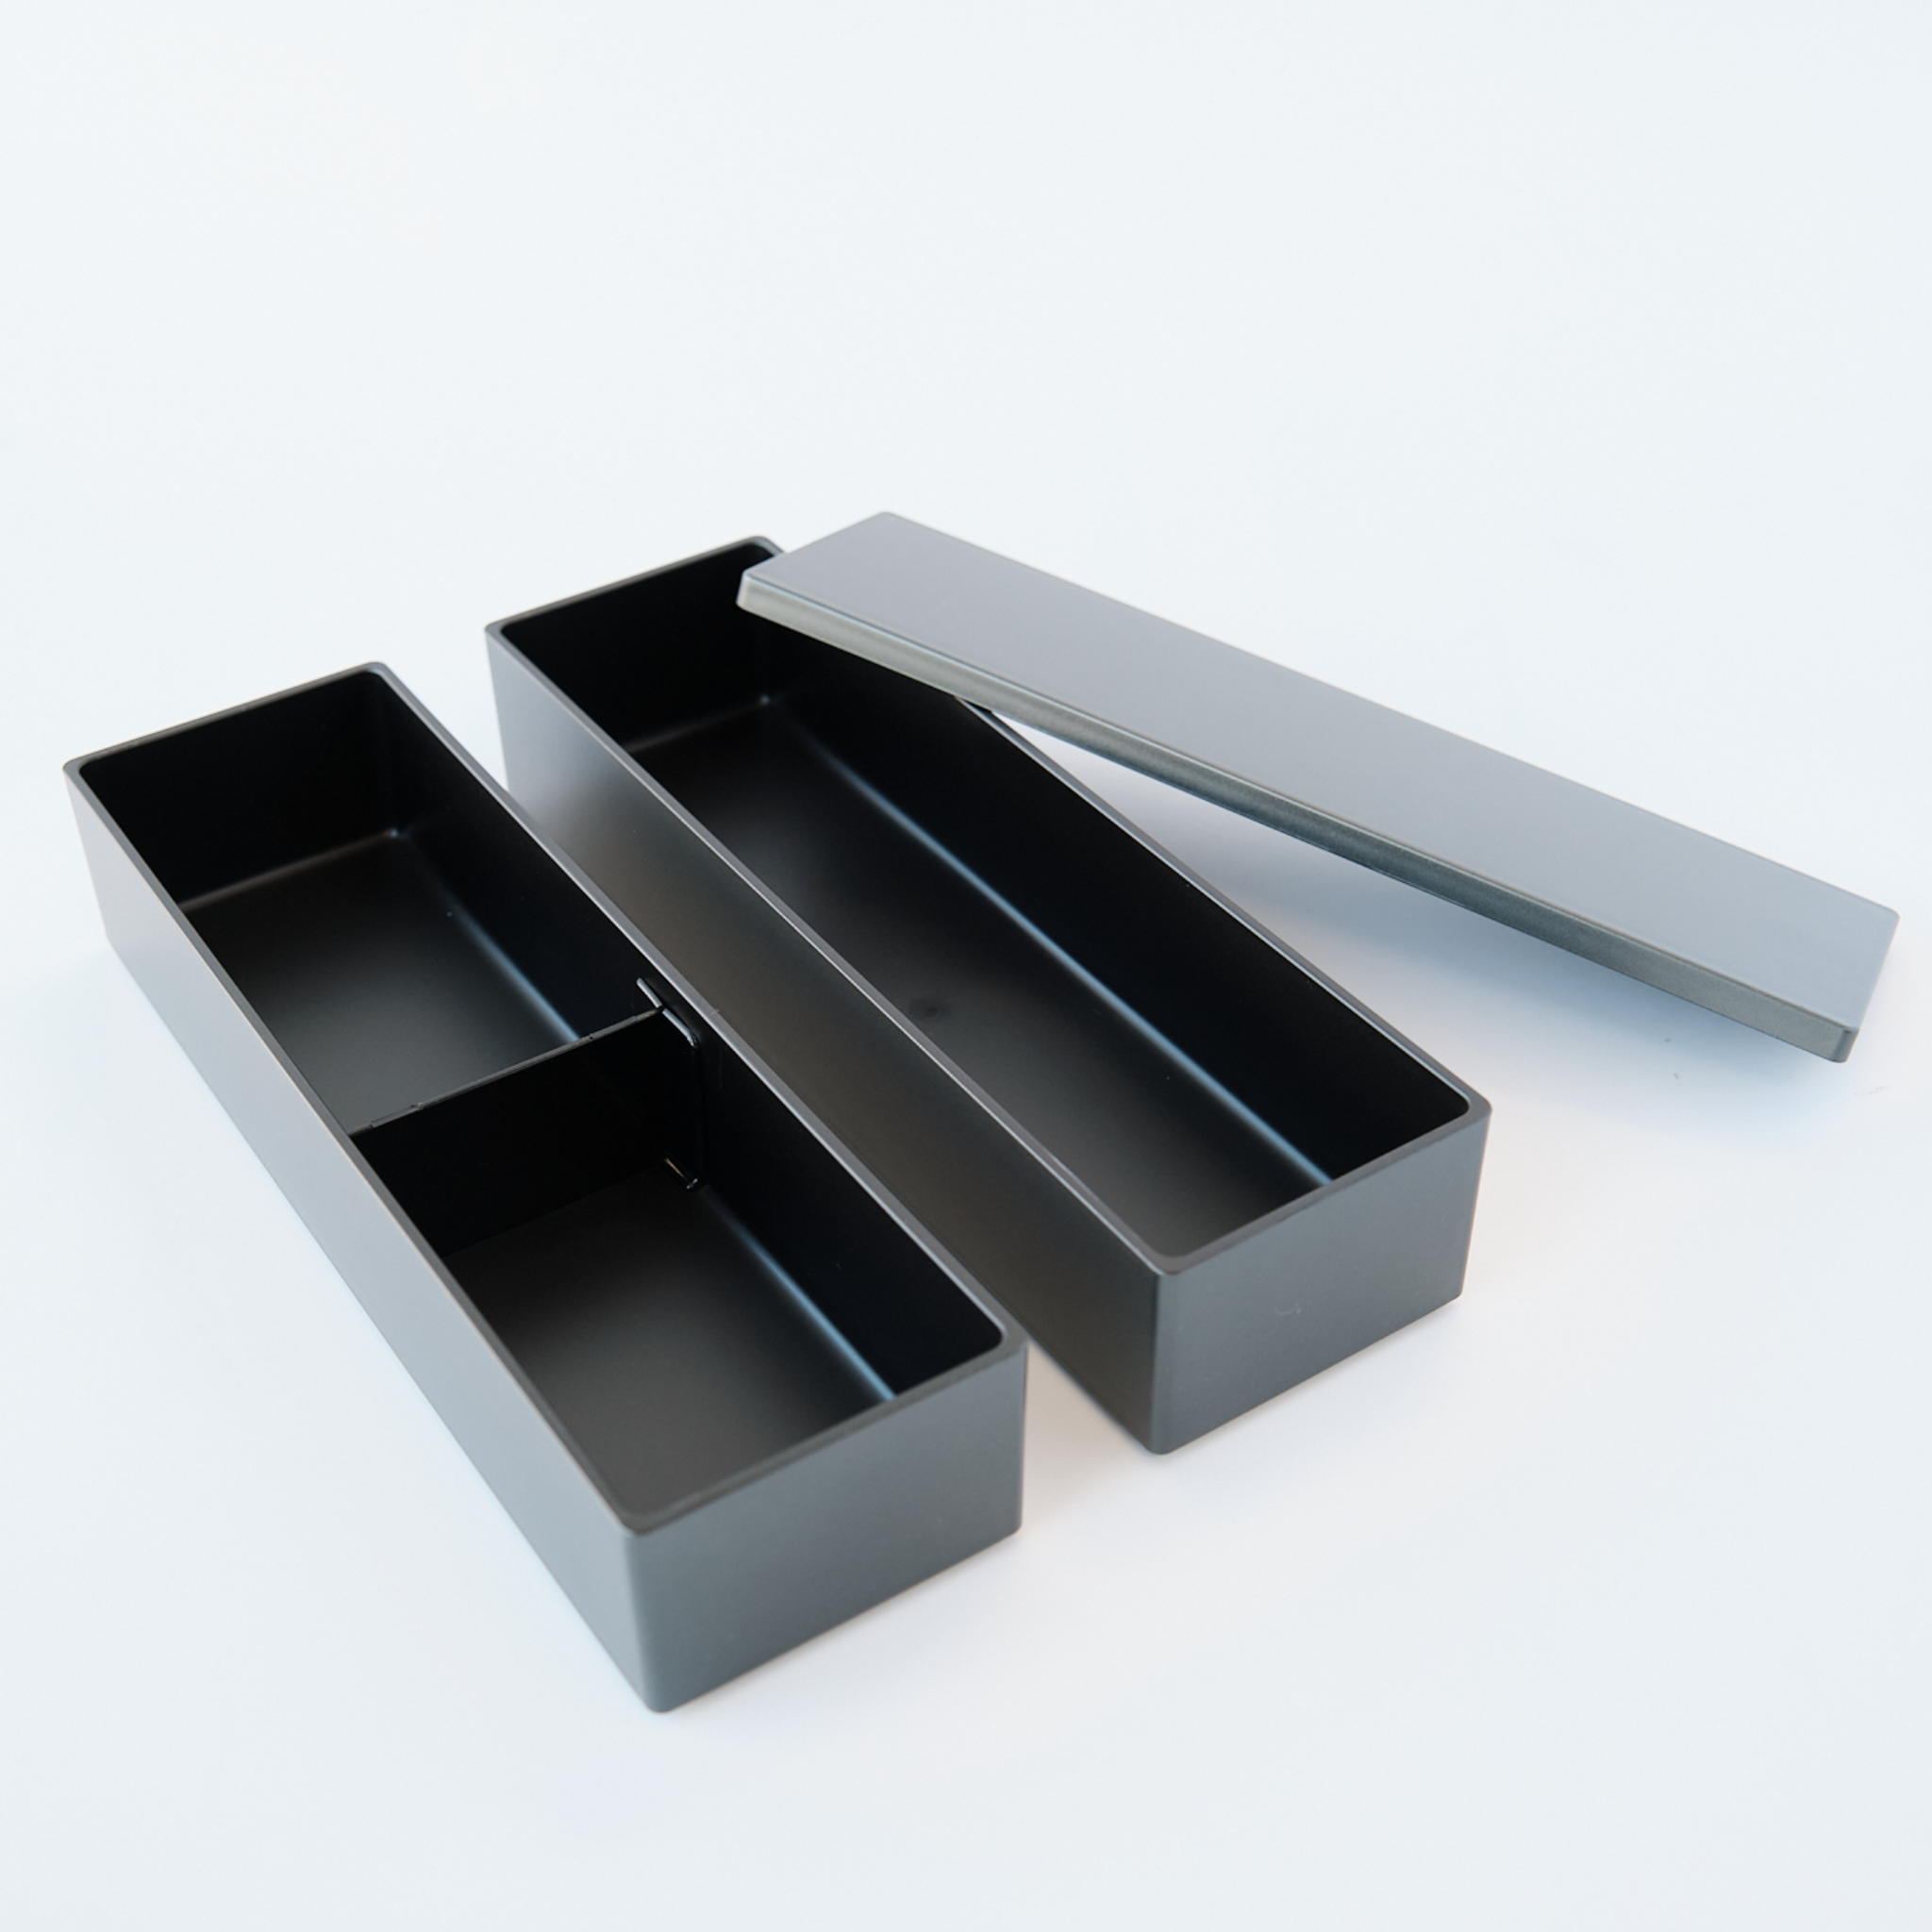 Caja Bento metálica de dos niveles Nagabako | Negro